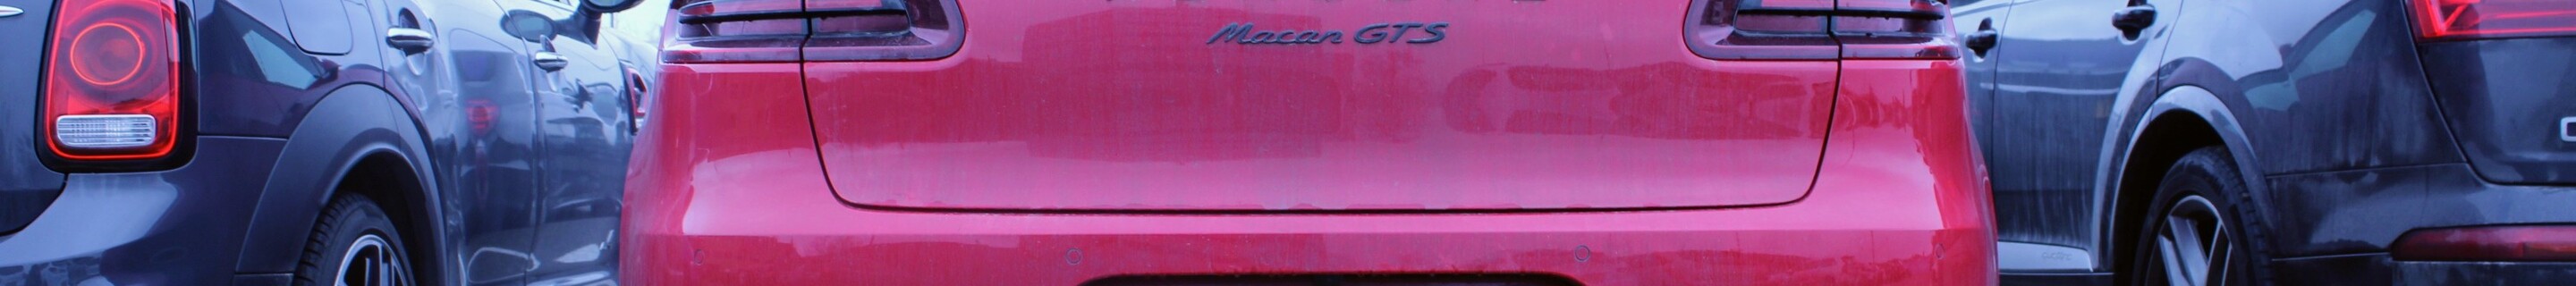 Porsche 95B Macan GTS